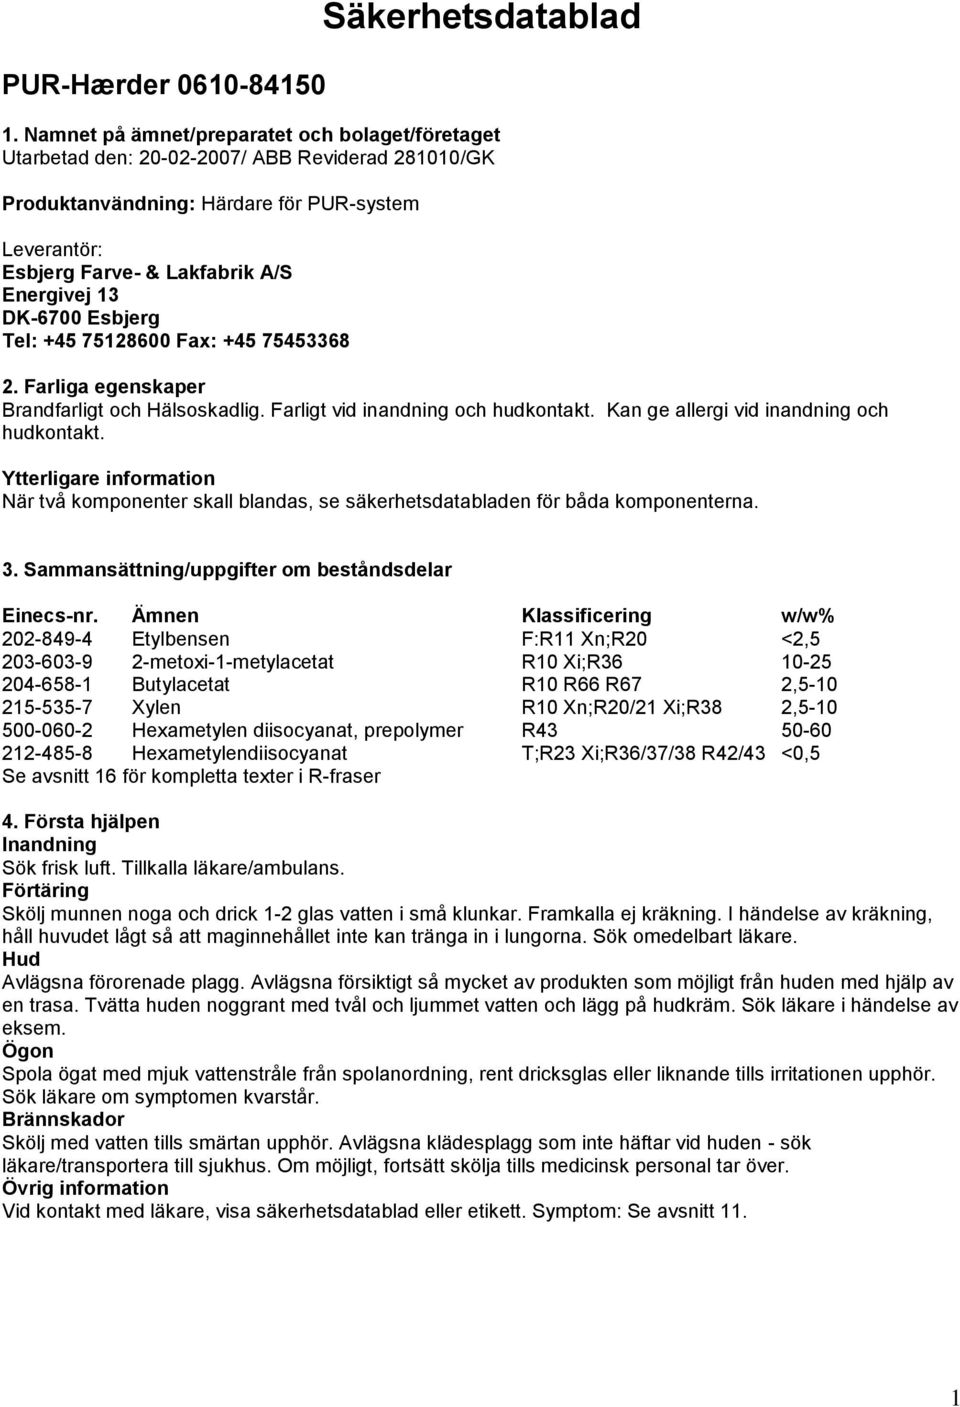 DK-6700 Esbjerg Tel: +45 75128600 Fax: +45 75453368 2. Farliga egenskaper Brandfarligt och Hälsoskadlig. Farligt vid inandning och hudkontakt. Kan ge allergi vid inandning och hudkontakt.